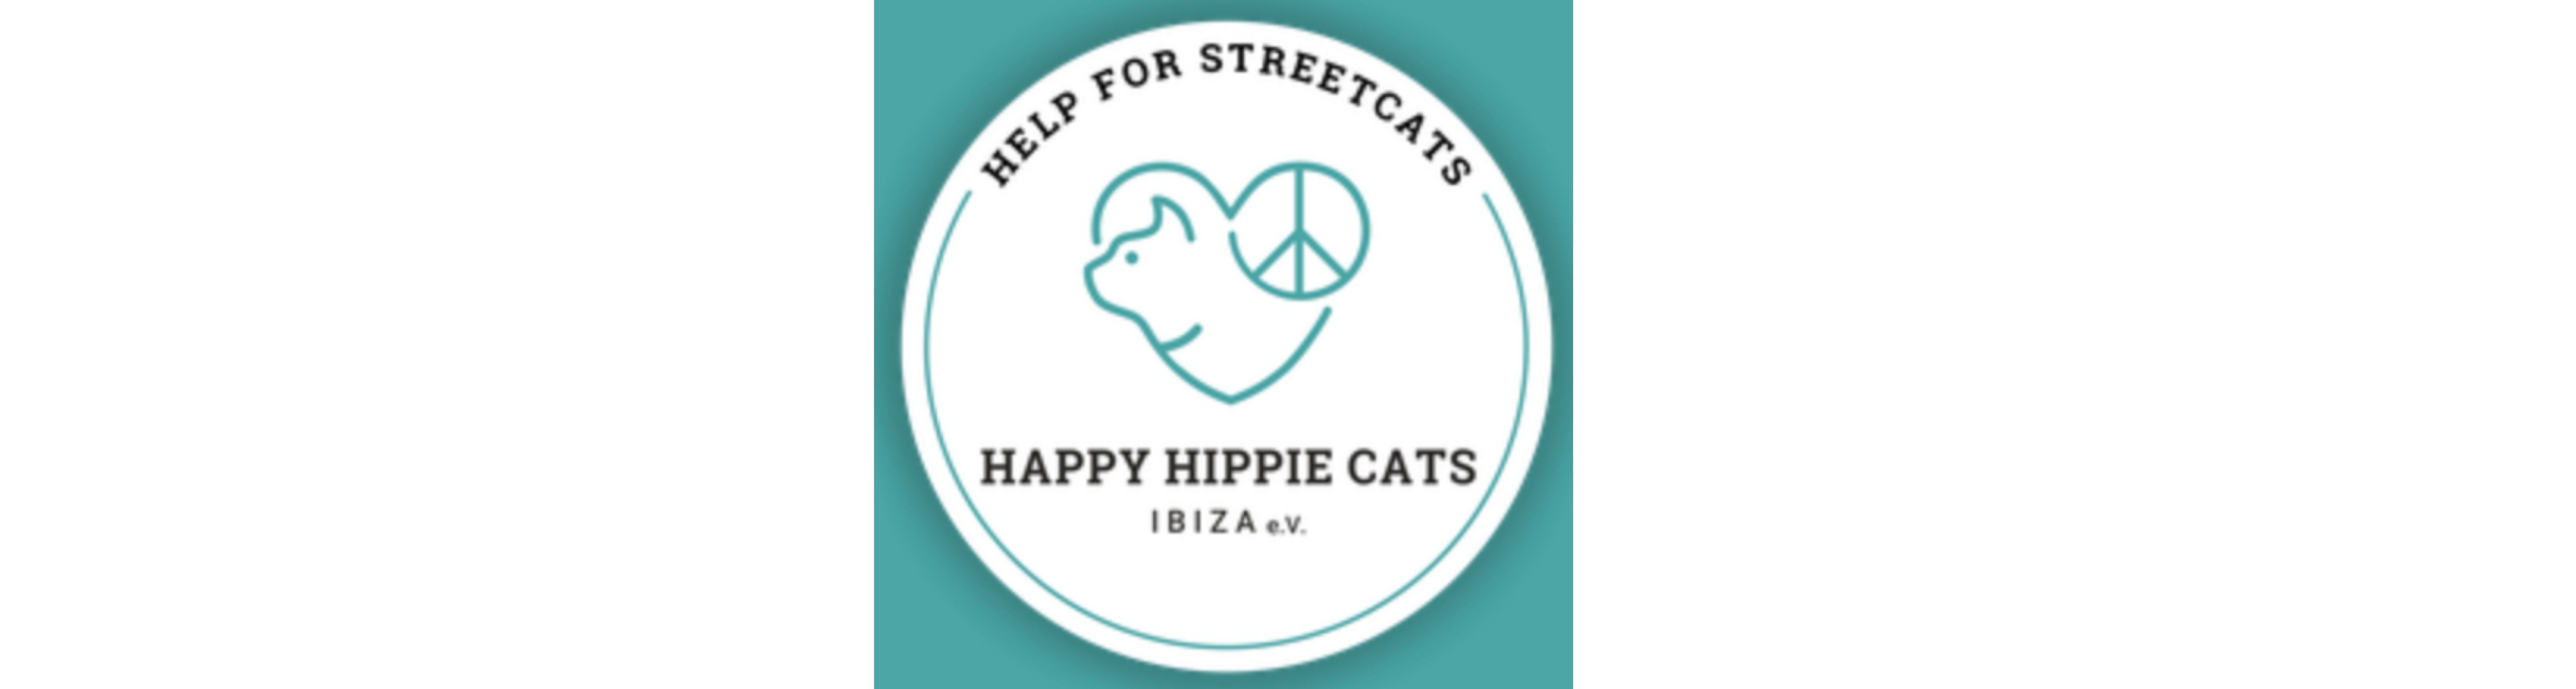 happy hippie cats logo